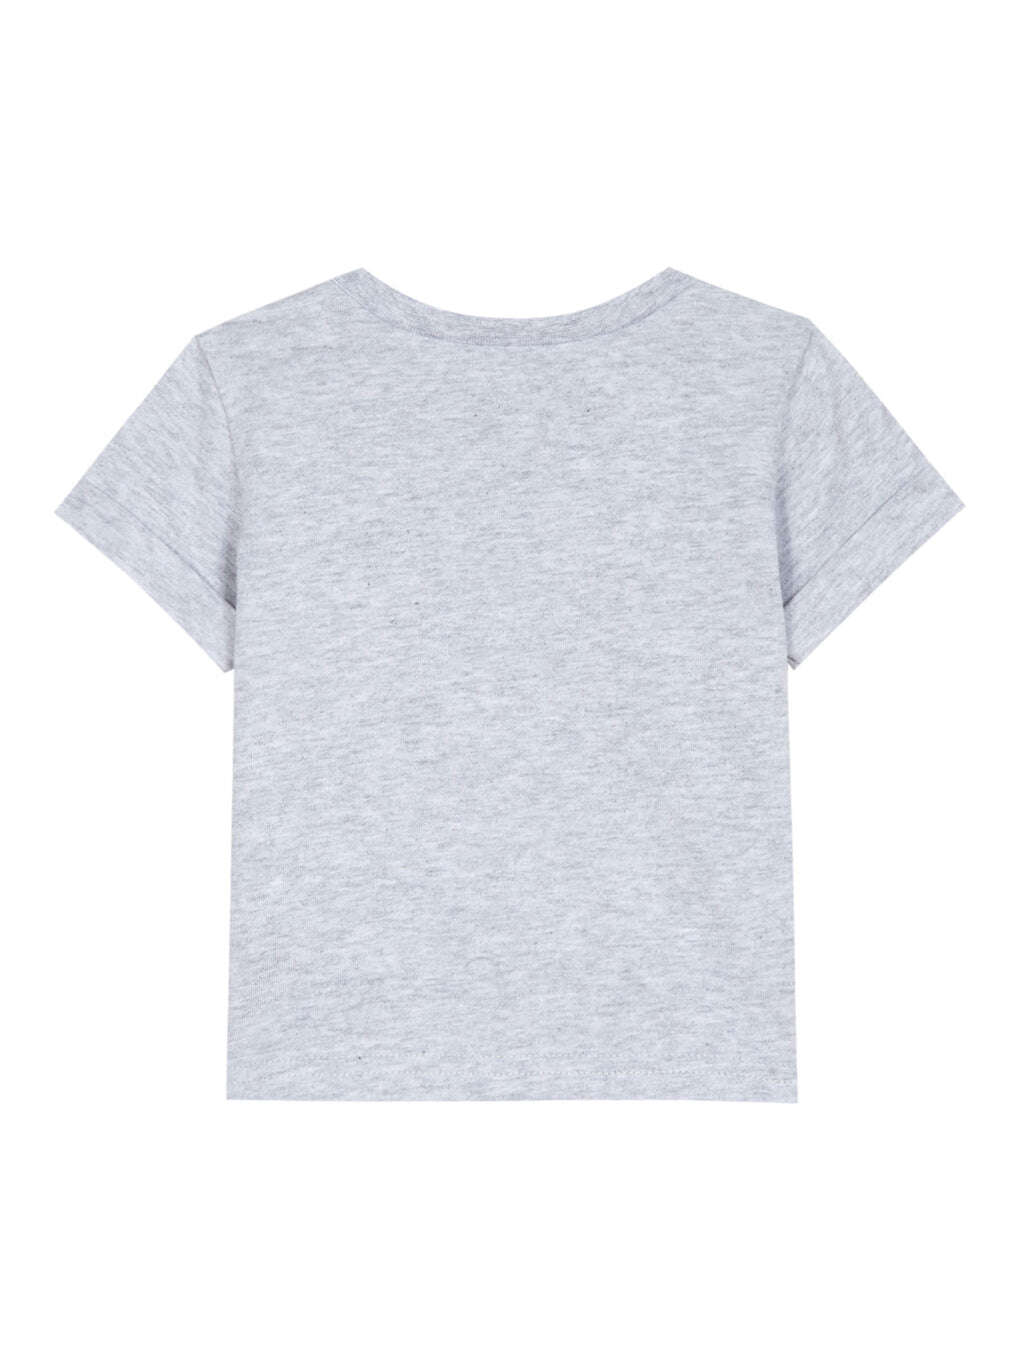 Tee-shirt - Jersey moucheté gris